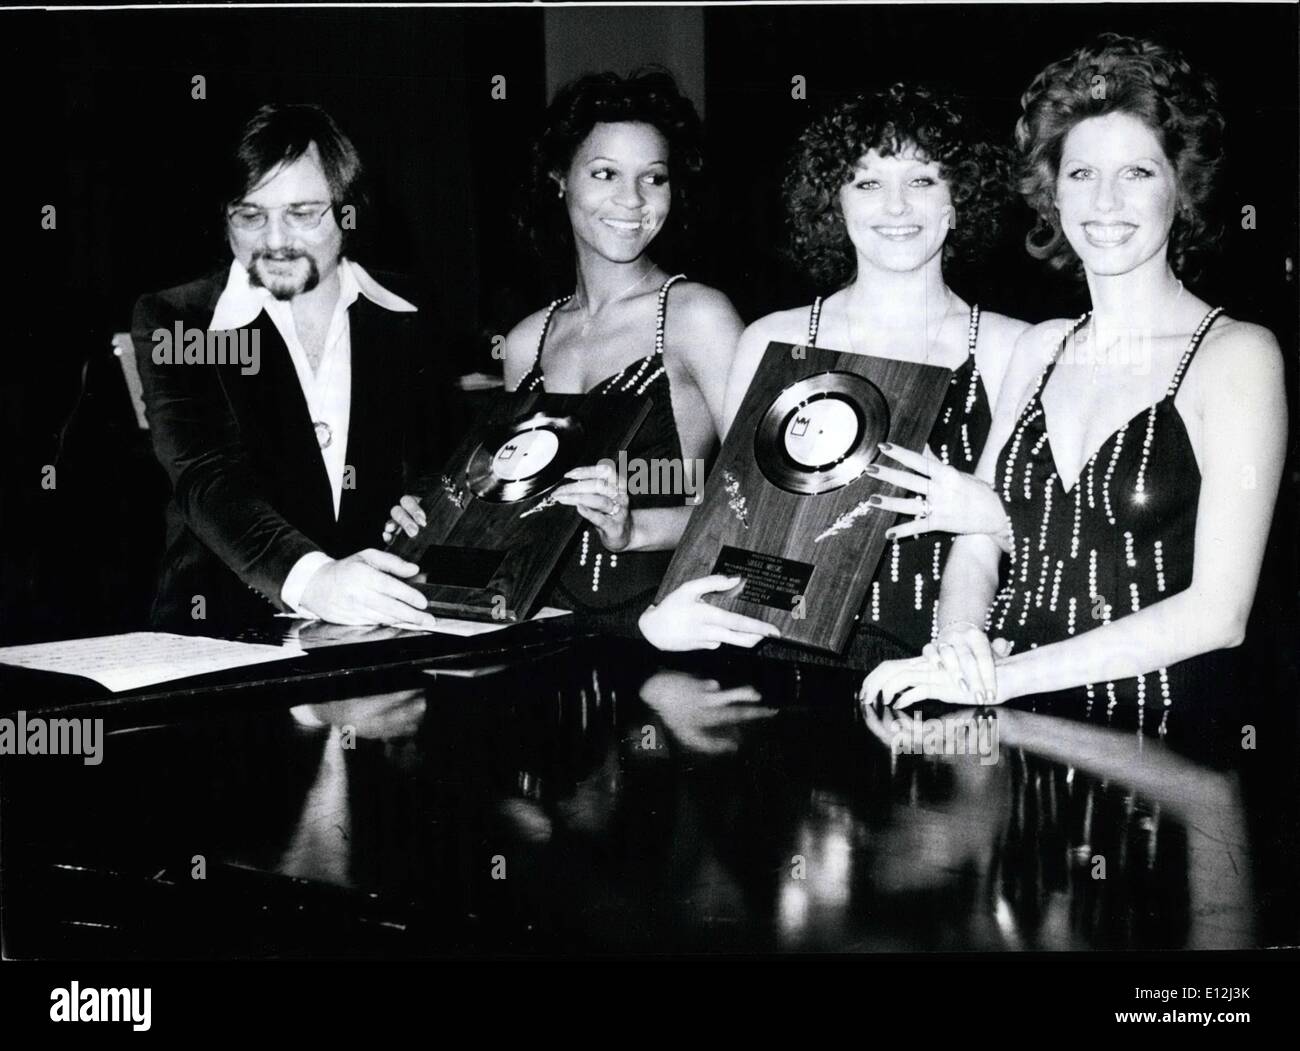 Febbraio 24, 2012 - Per la prima volta un gruppo tedesco con record in lingua inglese il ''Numero Uno"" negli Stati Uniti: Golden record sono stati recentemente premiato per la Silvester Levay (compositore, arrangiatore e conduttore) e il suo gruppo di argento Convenzione" (foto). I cantanti Ramona, Linda e Penny hanno iniziato la loro carriera congiunta nel gennaio 1975 e le ha prese nemmeno un anno per raggiungere la cima. Il loro primo singolo "'Save Me " divenne nr. 1 SU DI NOI ''Top 100'' e raggiunto il trentesimo posto sulla Gran Bretagna della hit parade Foto Stock